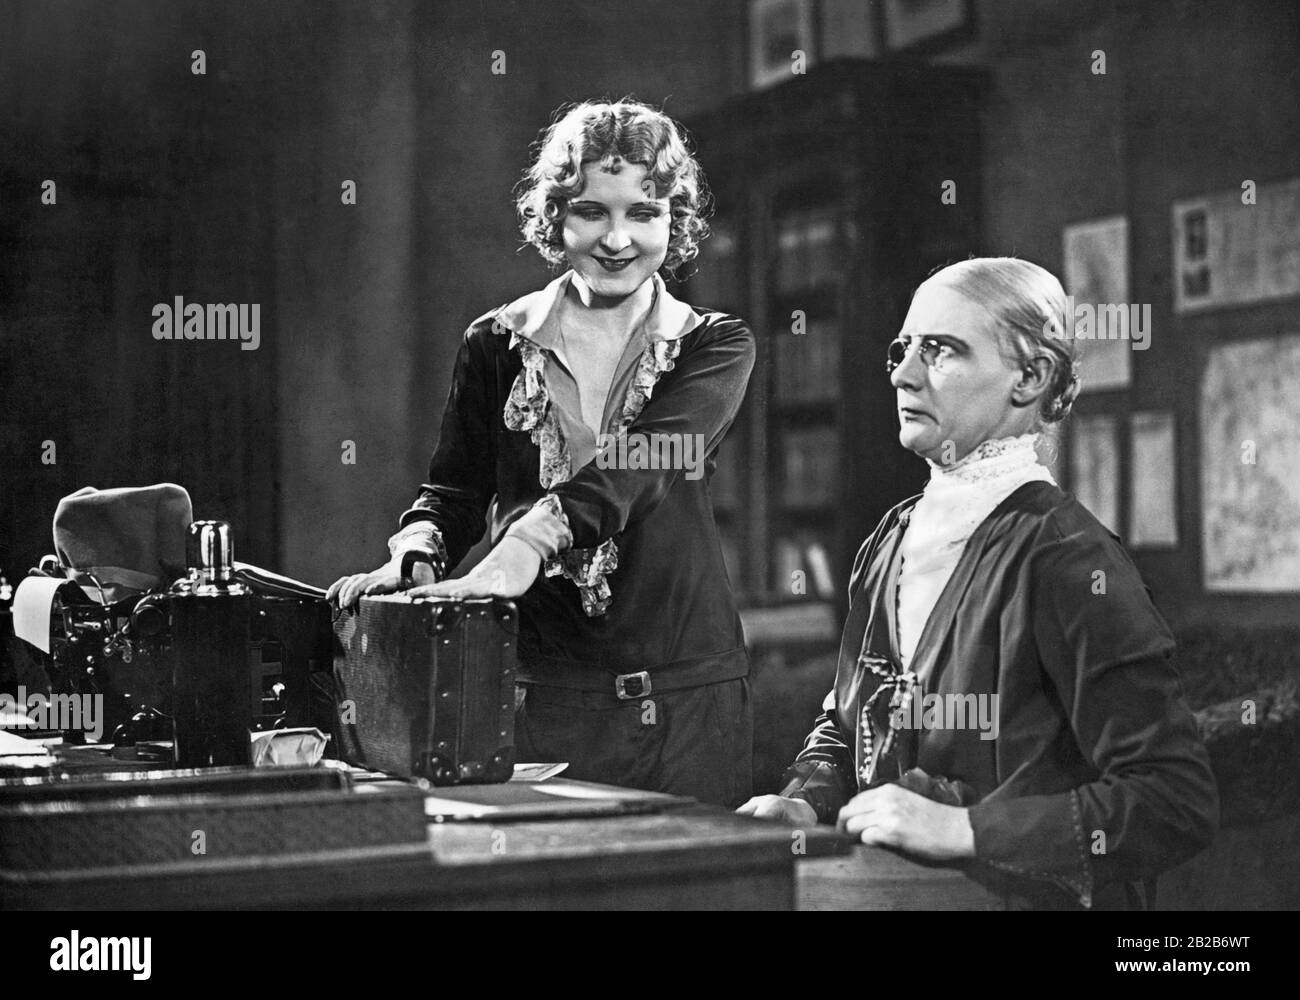 Dieses Bild zeigt eine Szene aus einem Film, in dem ein Büro aus den 1910er Jahren abgebildet ist und Eve Gray einen Büroangestellten porträtiert. Stockfoto